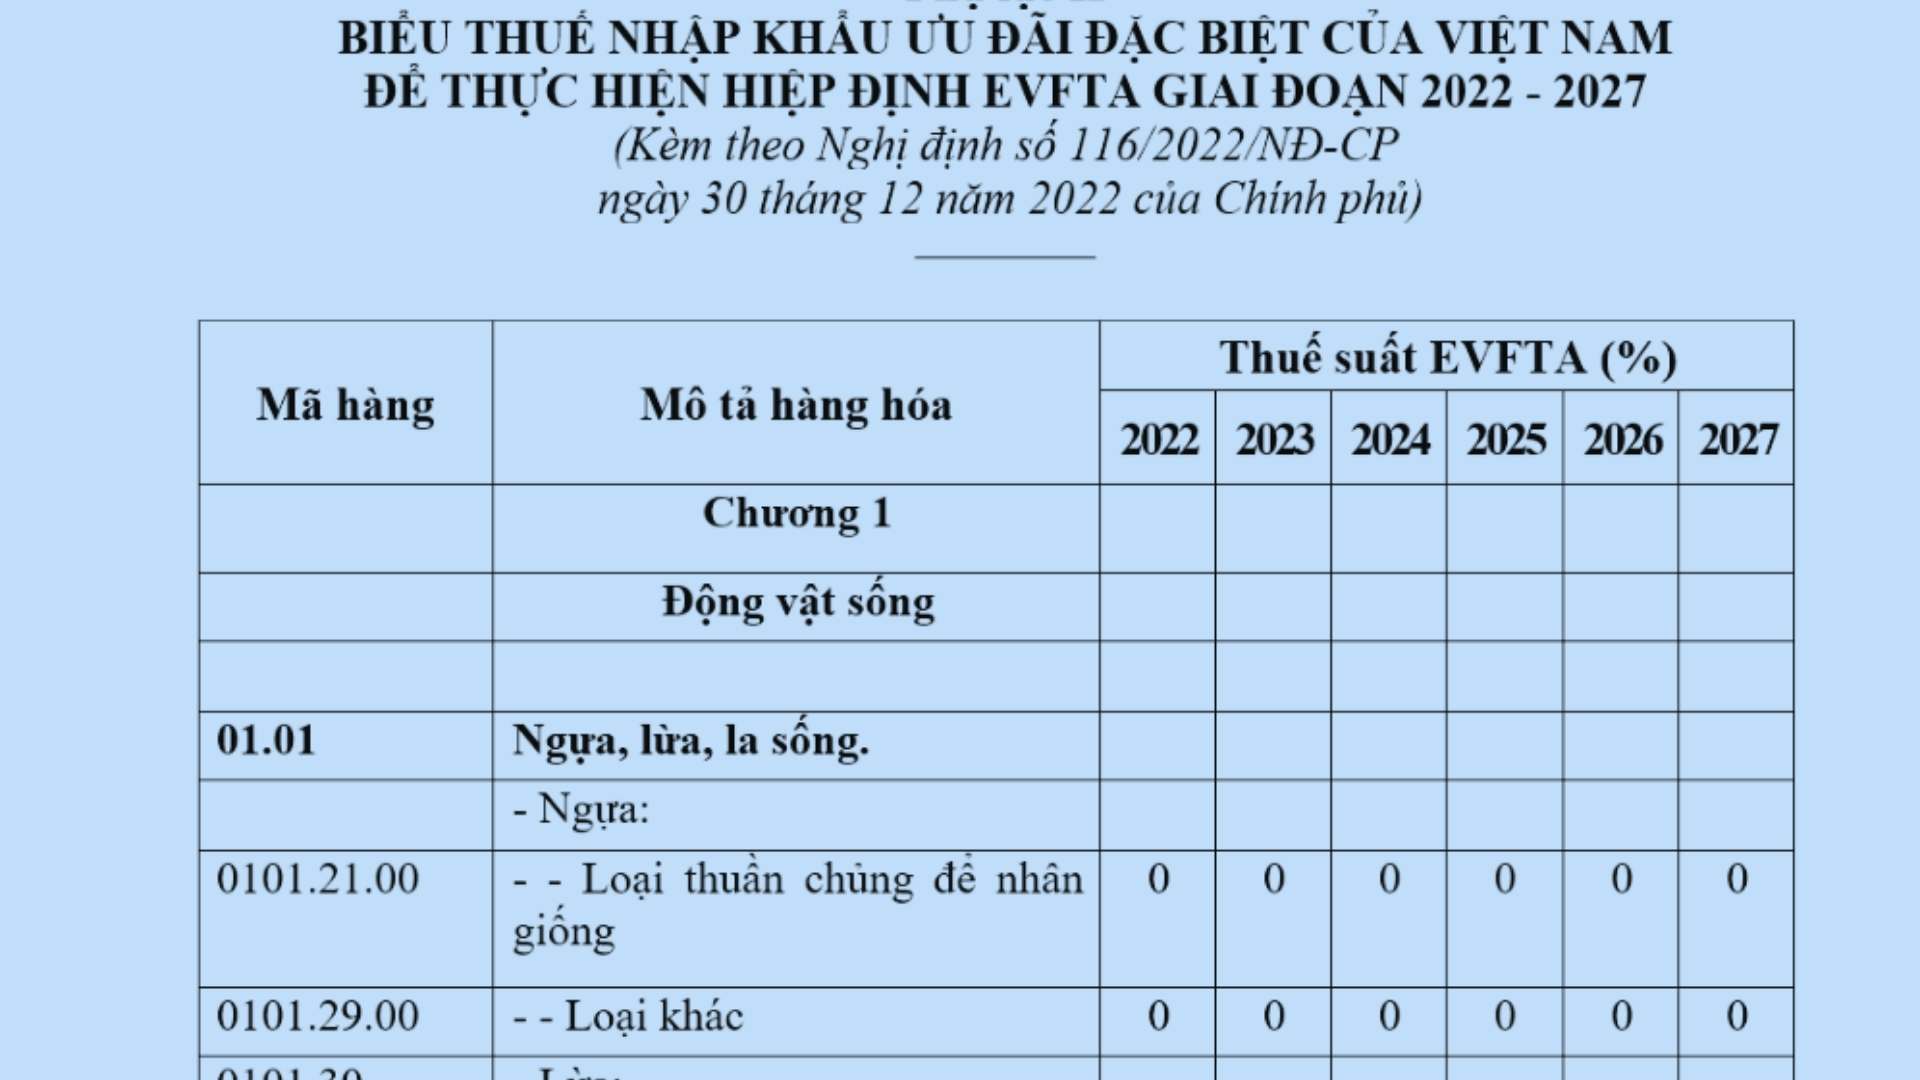 Biểu thuế nhập khẩu ưu đãi đặc biệt Việt Nam Liên minh Châu Âu